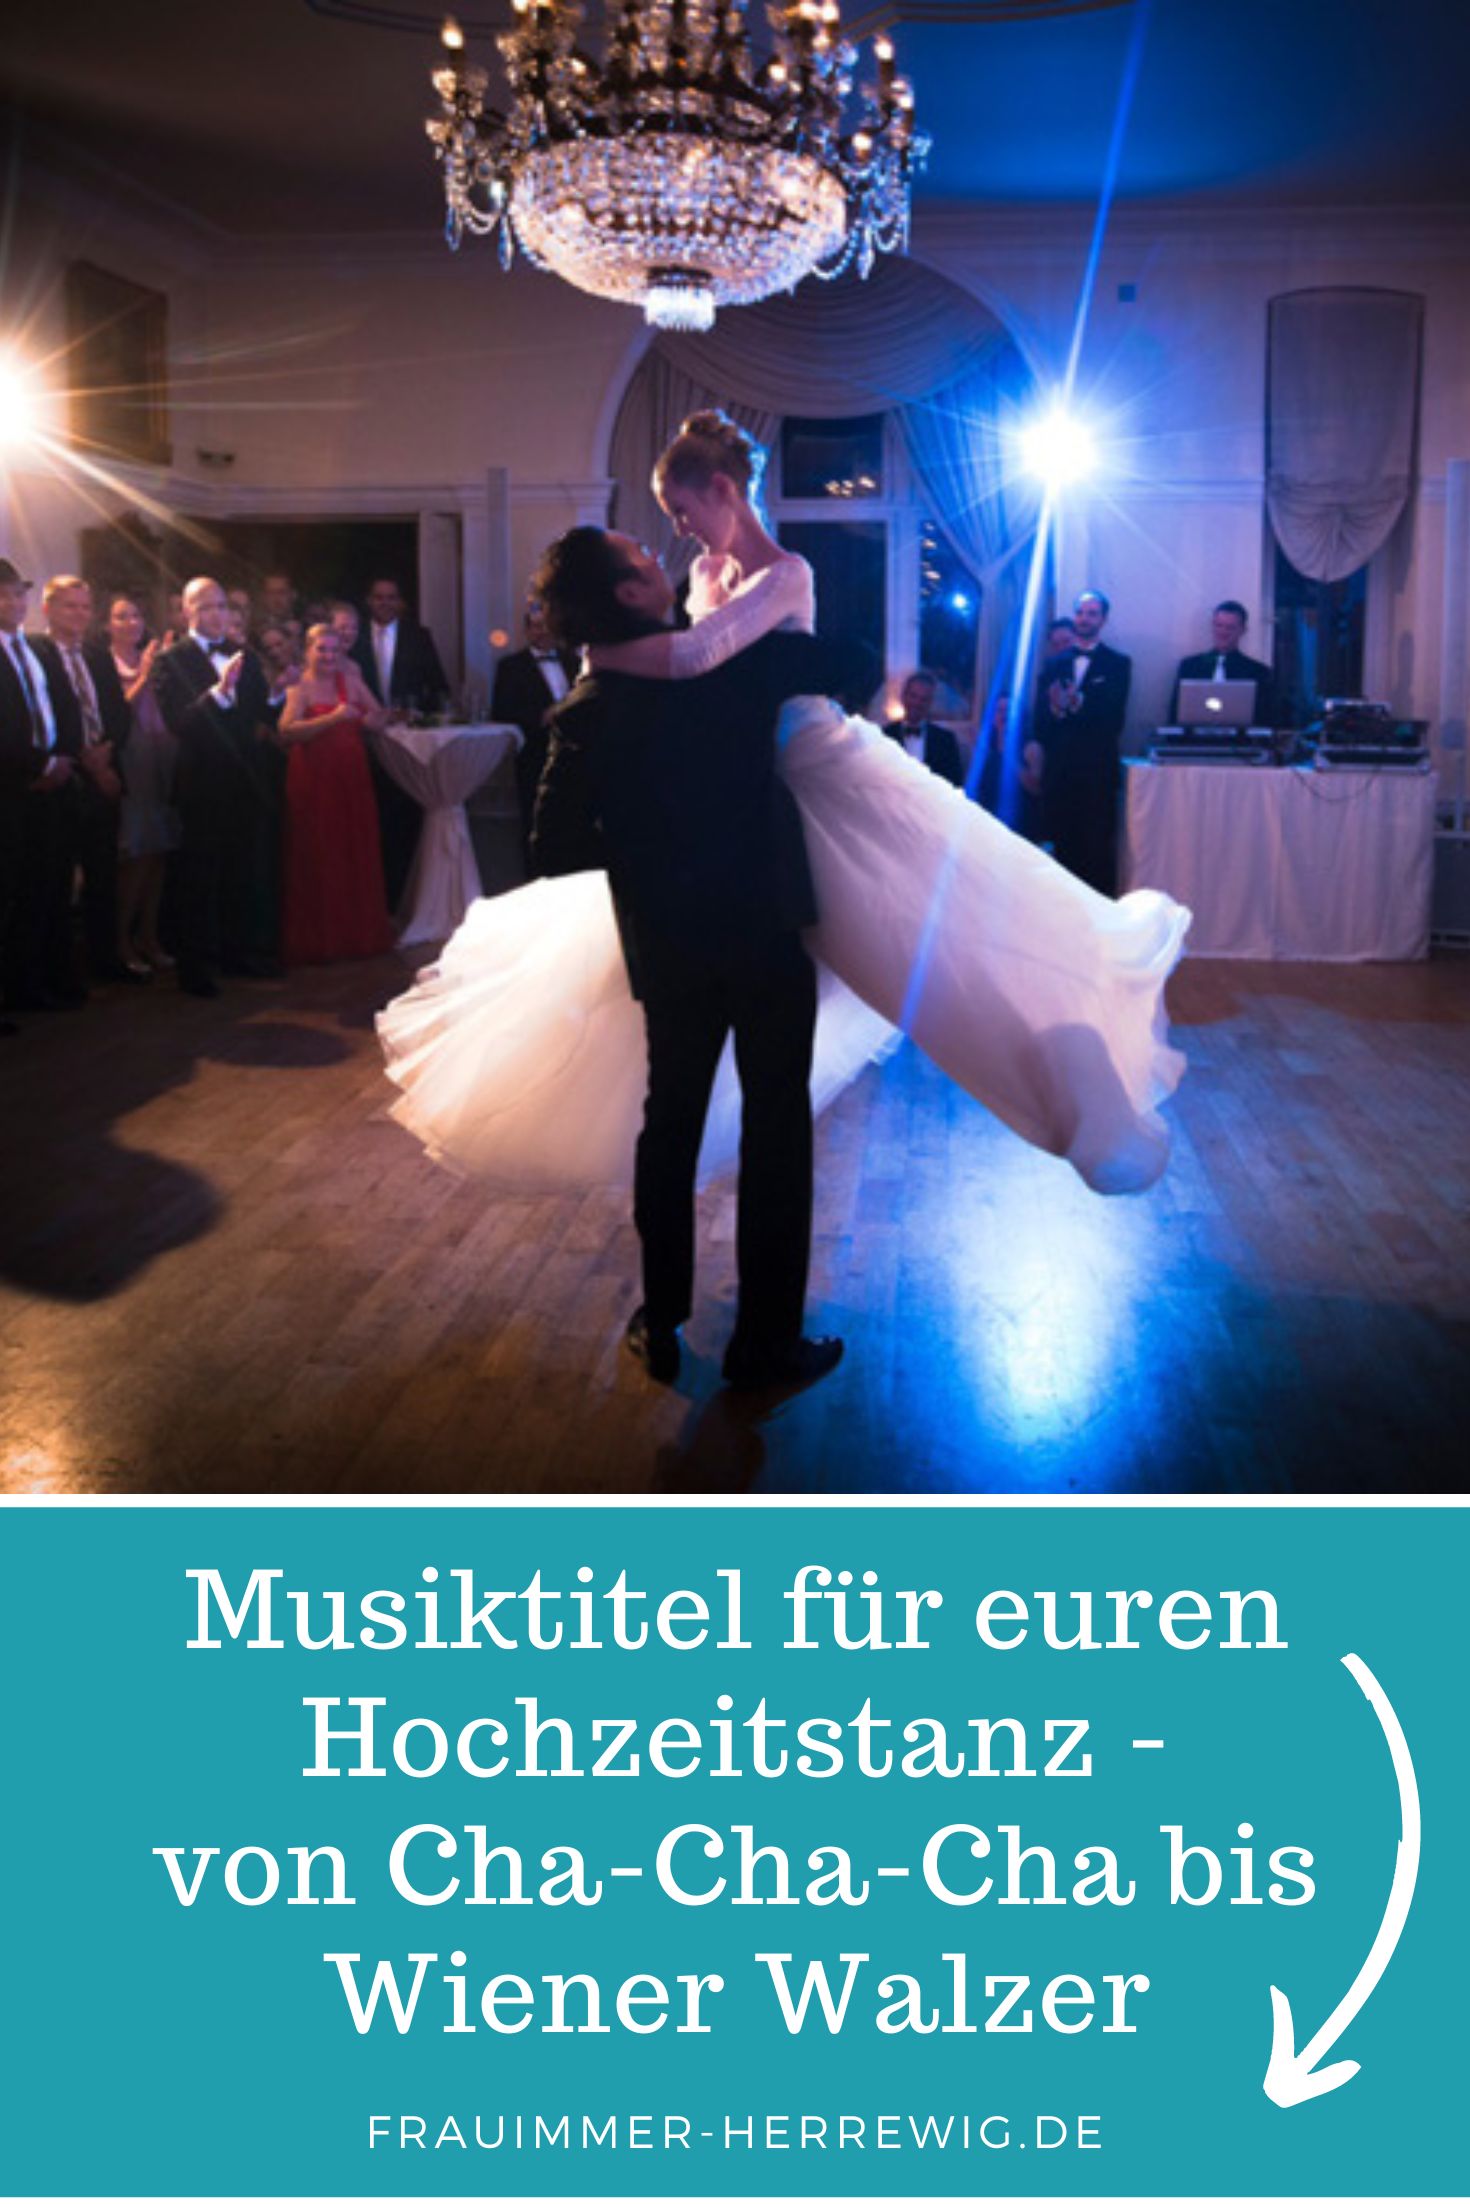 Hochzeitstanz musiktitel – gesehen bei frauimmer-herrewig.de